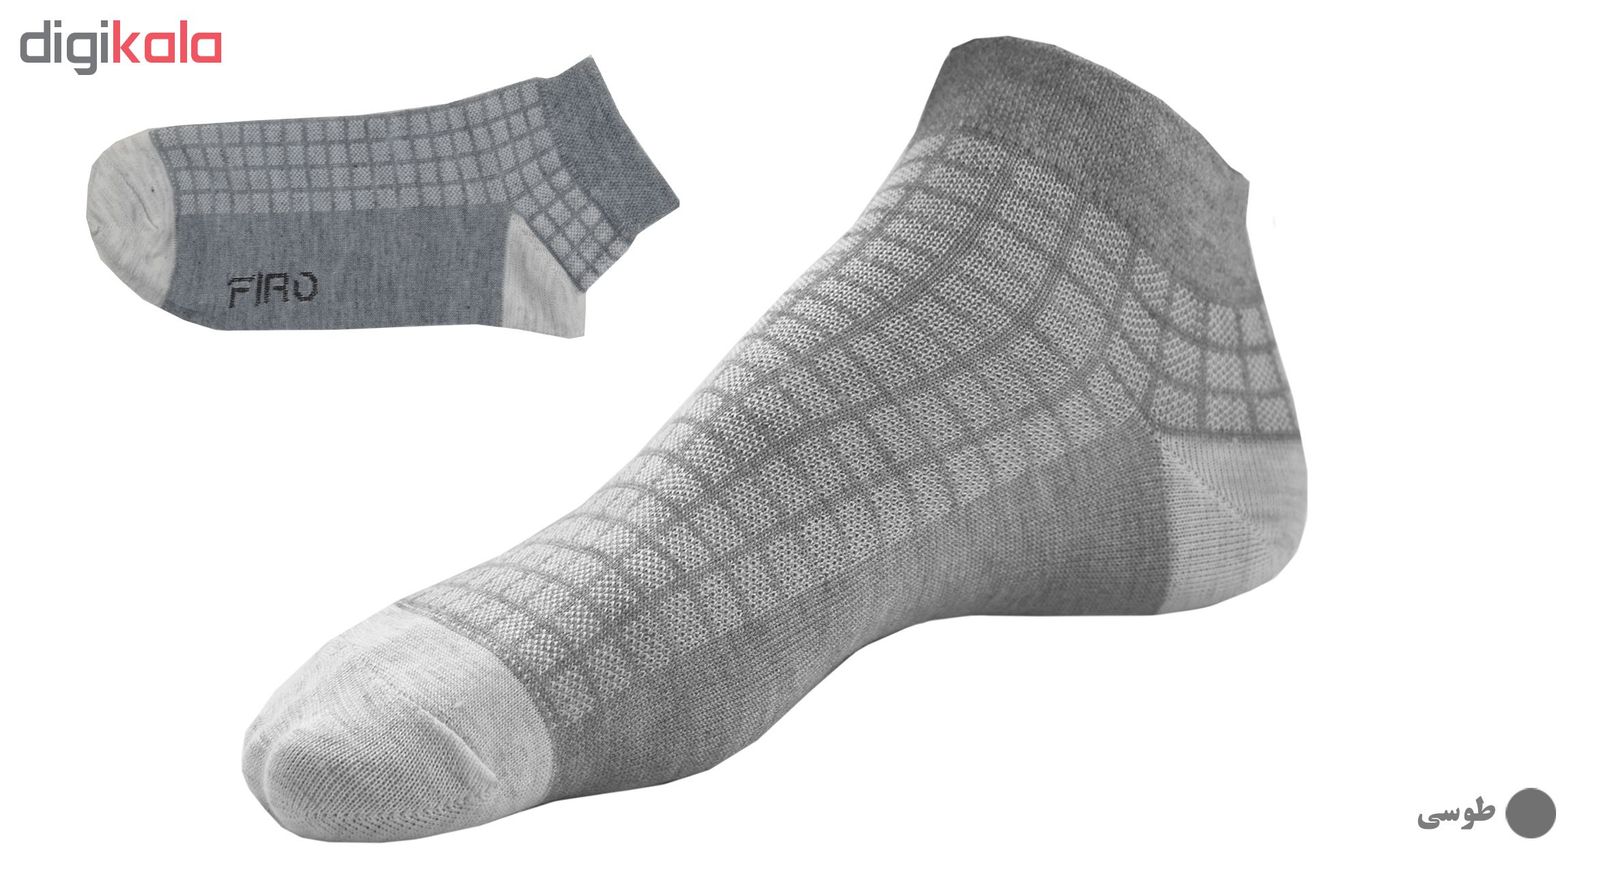 جوراب مردانه فیرو کد FT250 مجموعه 6 عددی -  - 2